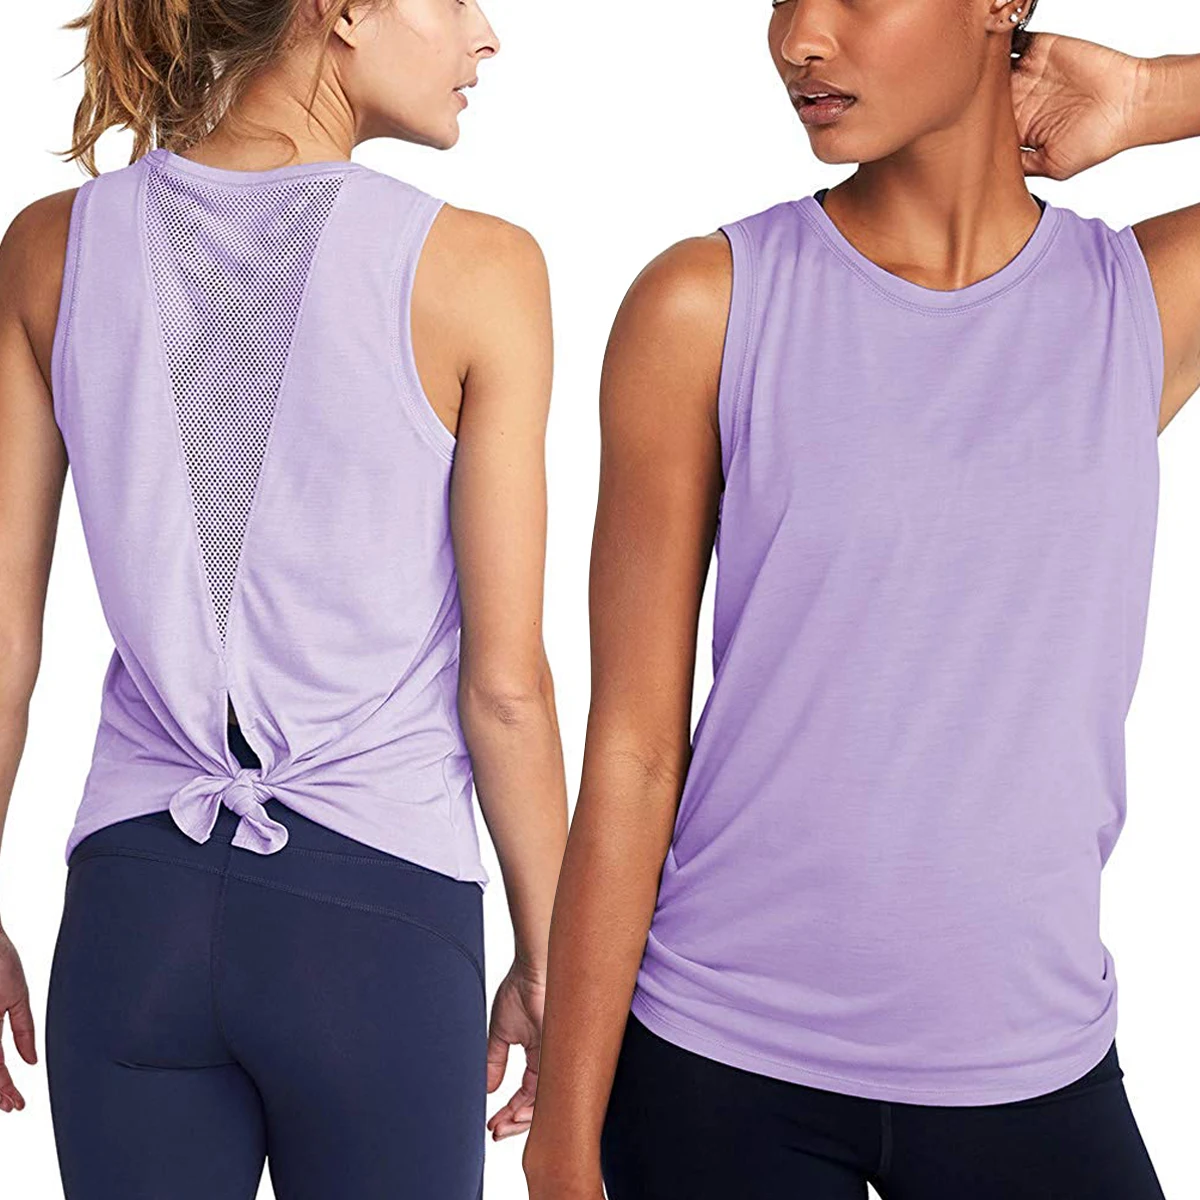 Женская рубашка для йоги, тренажерного зала, фитнеса, Спортивная рубашка, быстросохнущая, для бега, велоспорта, Спортивная рубашка, пикантная Спортивная одежда для женщин, для спортзала